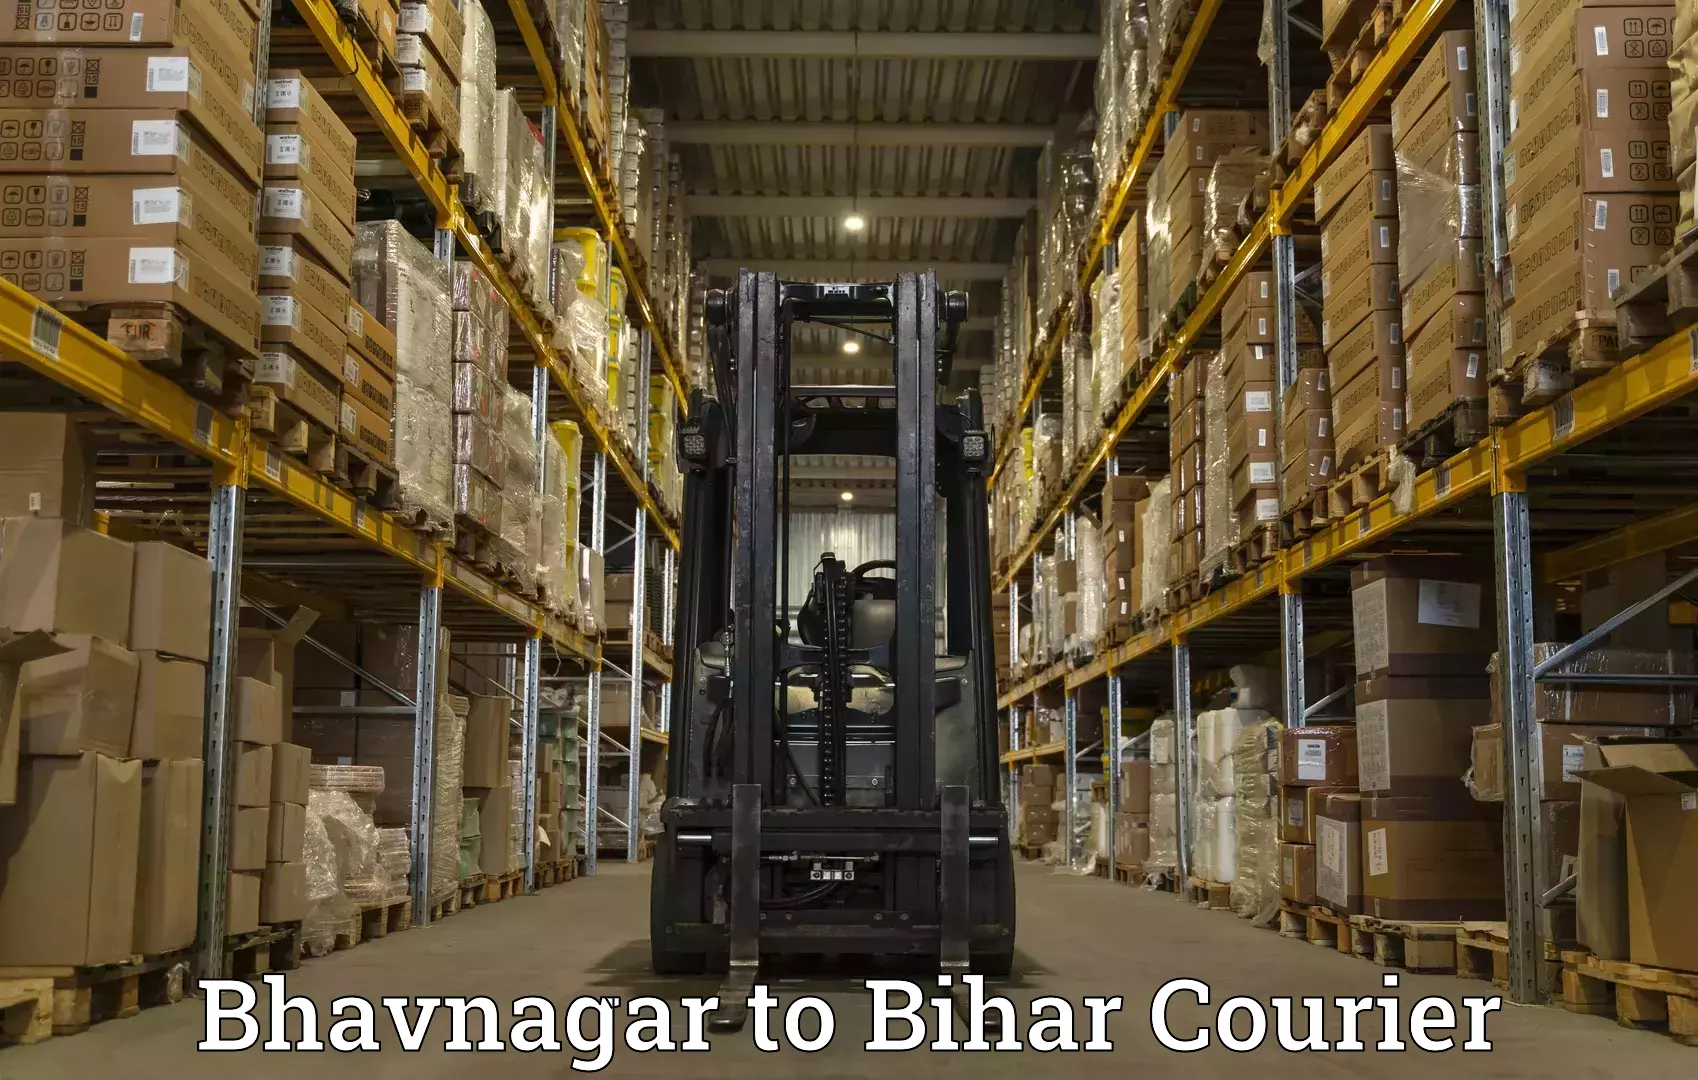 Courier services Bhavnagar to Munger